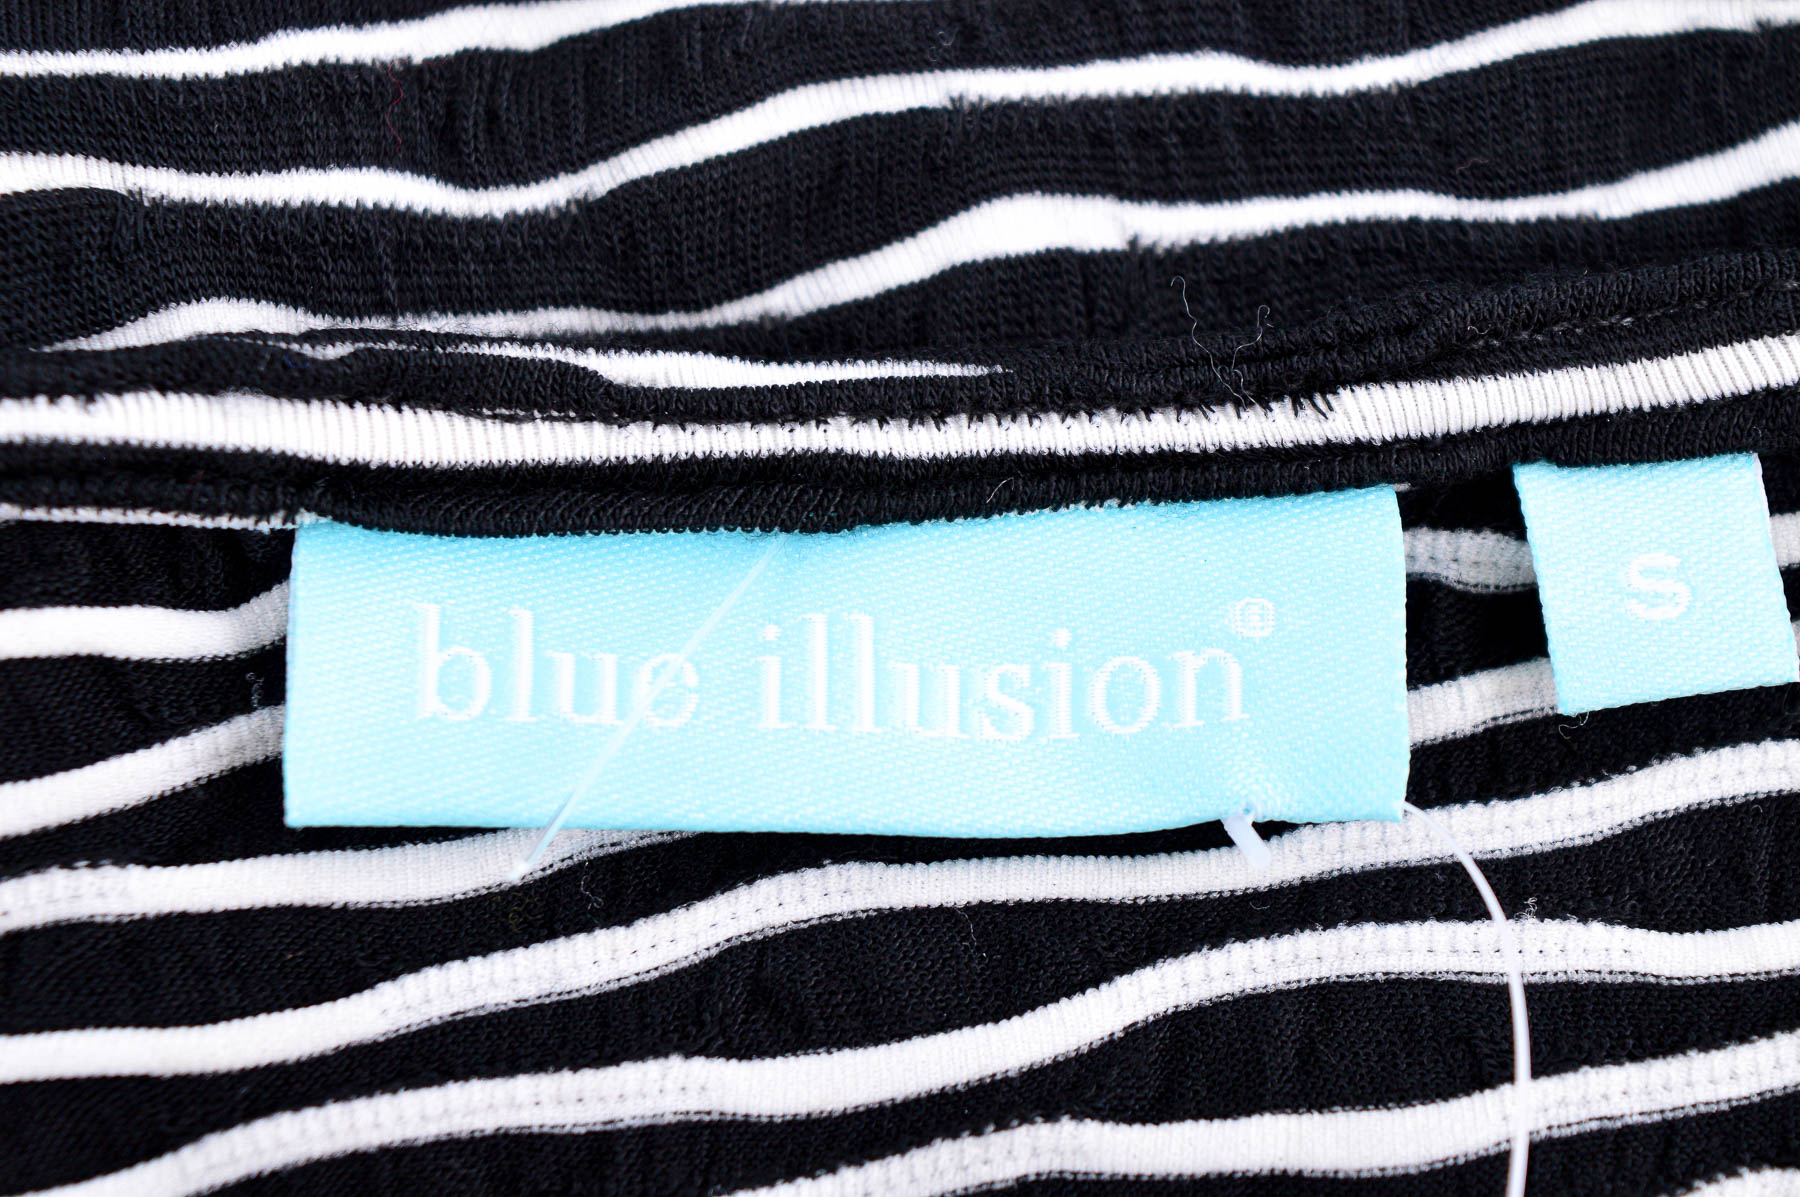 Women's blouse - Blue illusion - 2